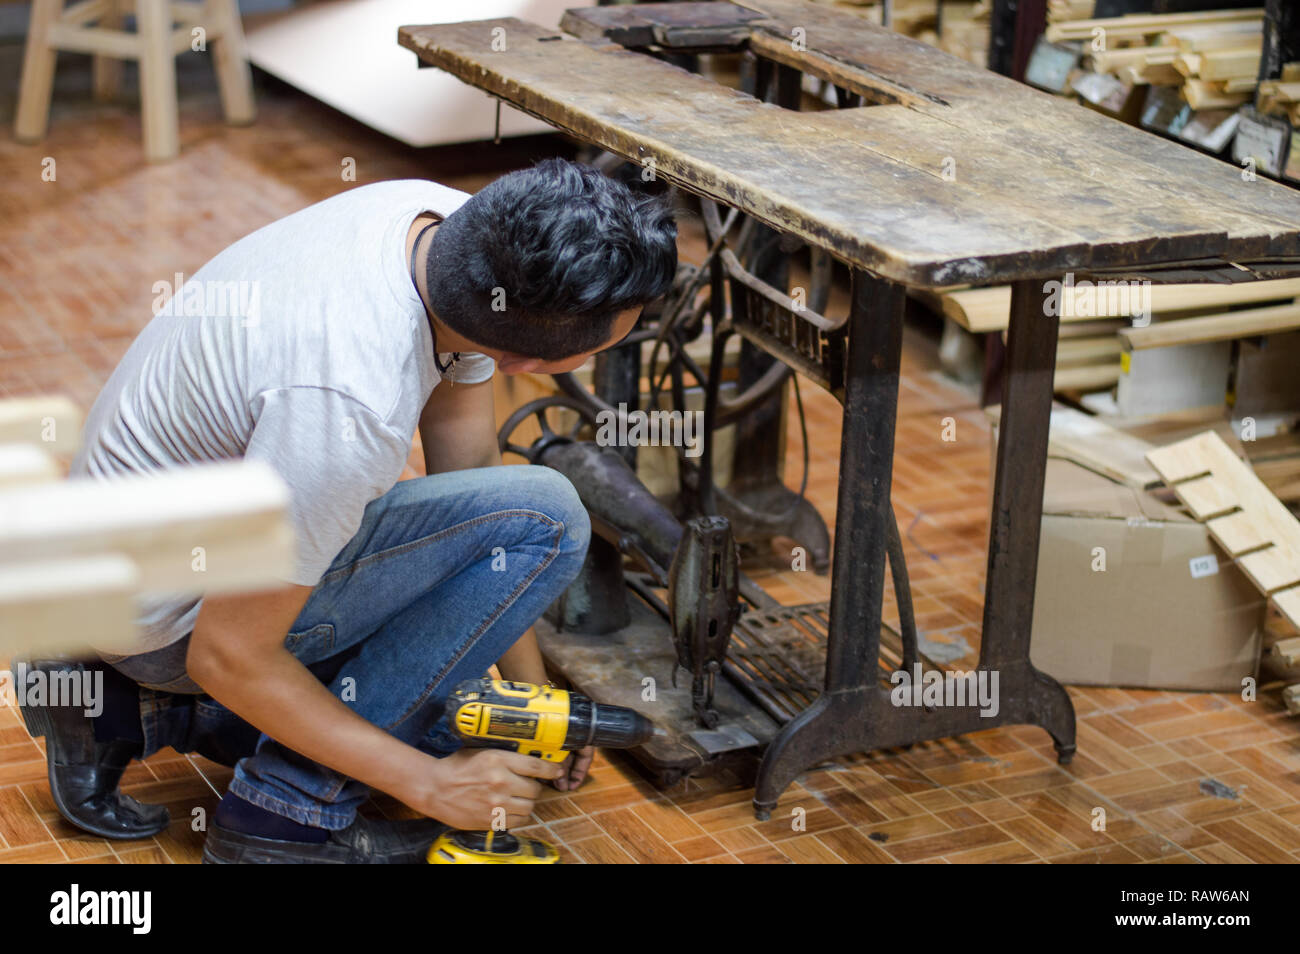 Carpenter de restauration d'machines Banque D'Images